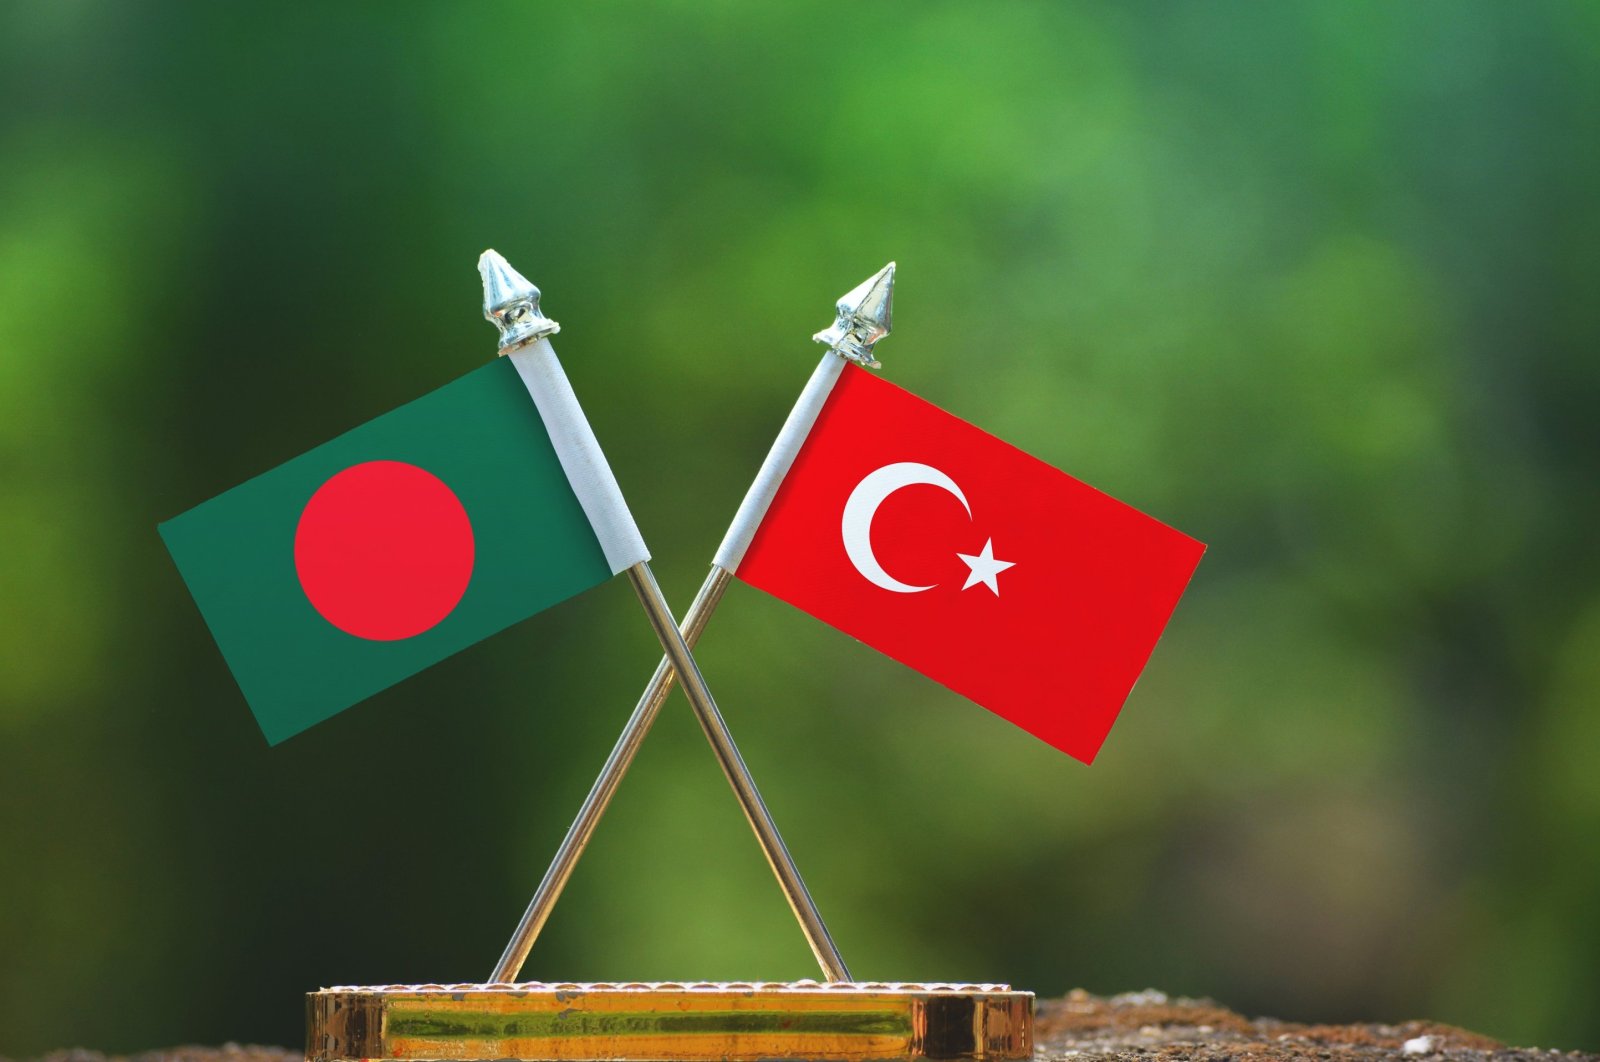 Kerjasama pertahanan Turki-Bangladesh memastikan keuntungan bersama: Analis